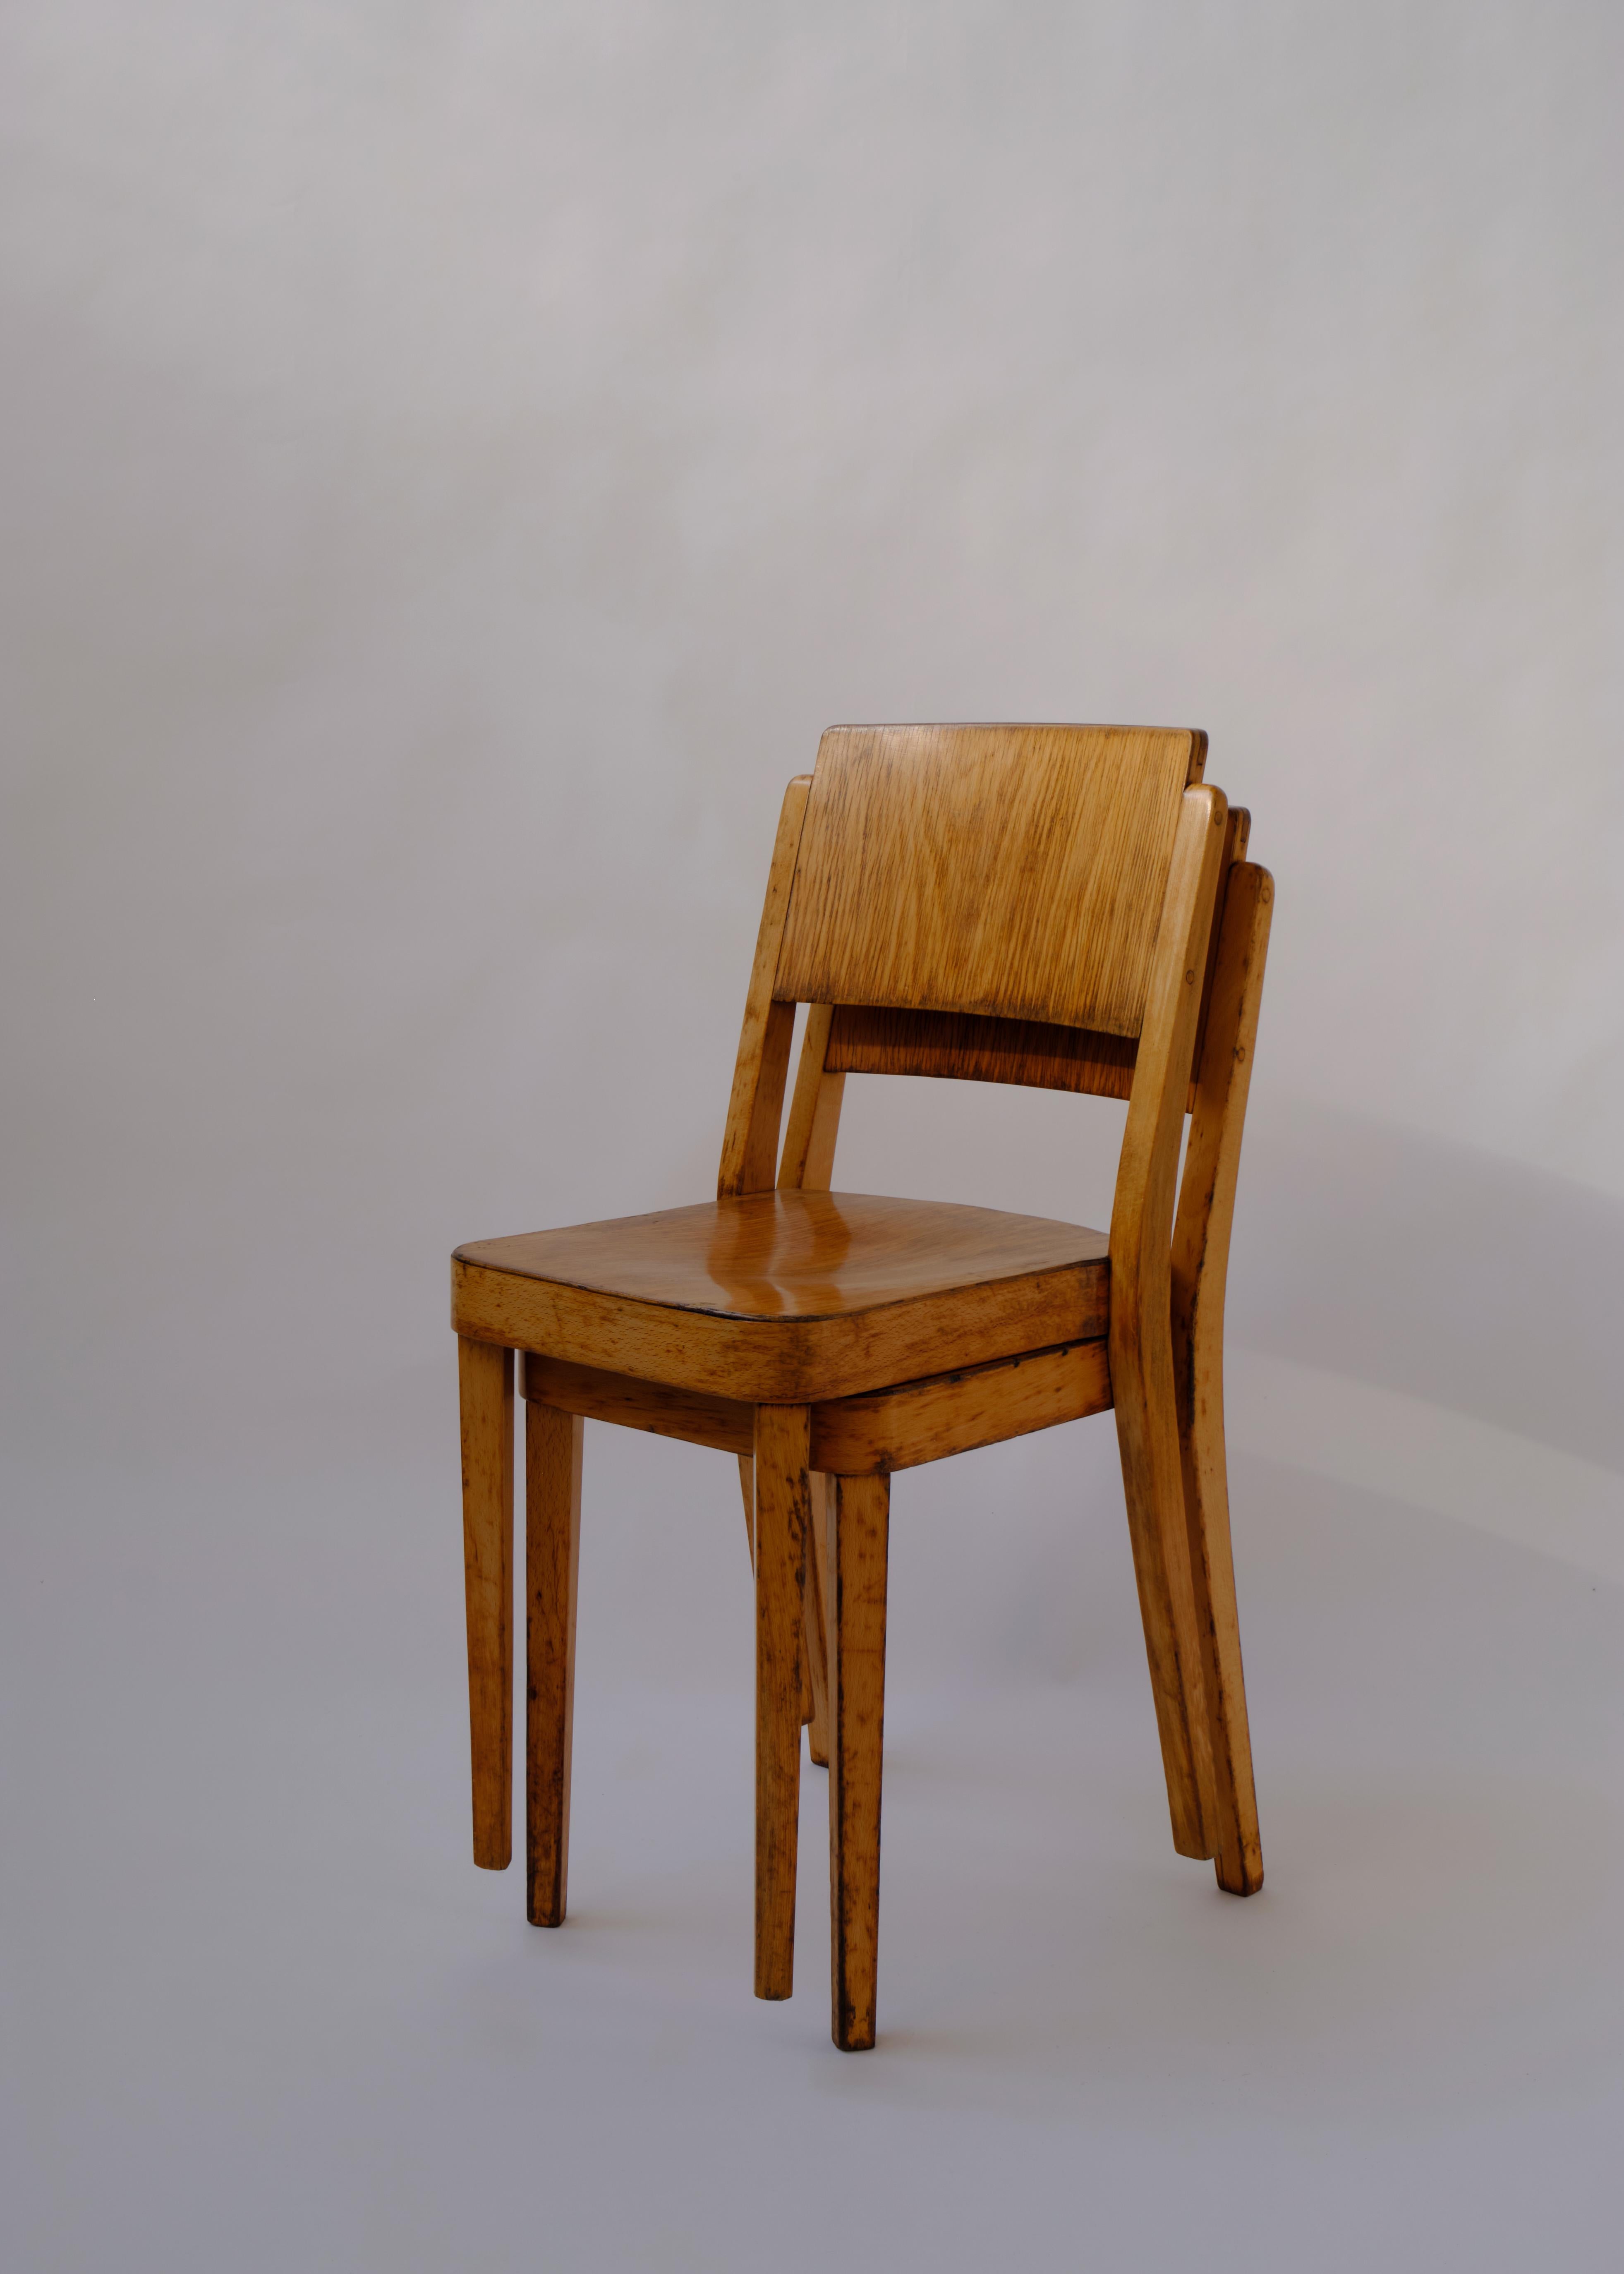 Thonet's Montana Chair, Modell A 1250, hergestellt aus massiver Birke und Sperrholz.  Leichtes und stapelbares Design.

Wird als Paar verkauft.

Das Label auf beiden Stühlen wurde erstmals 1922 verwendet, und die Stühle sind im Thonet-Katalog von